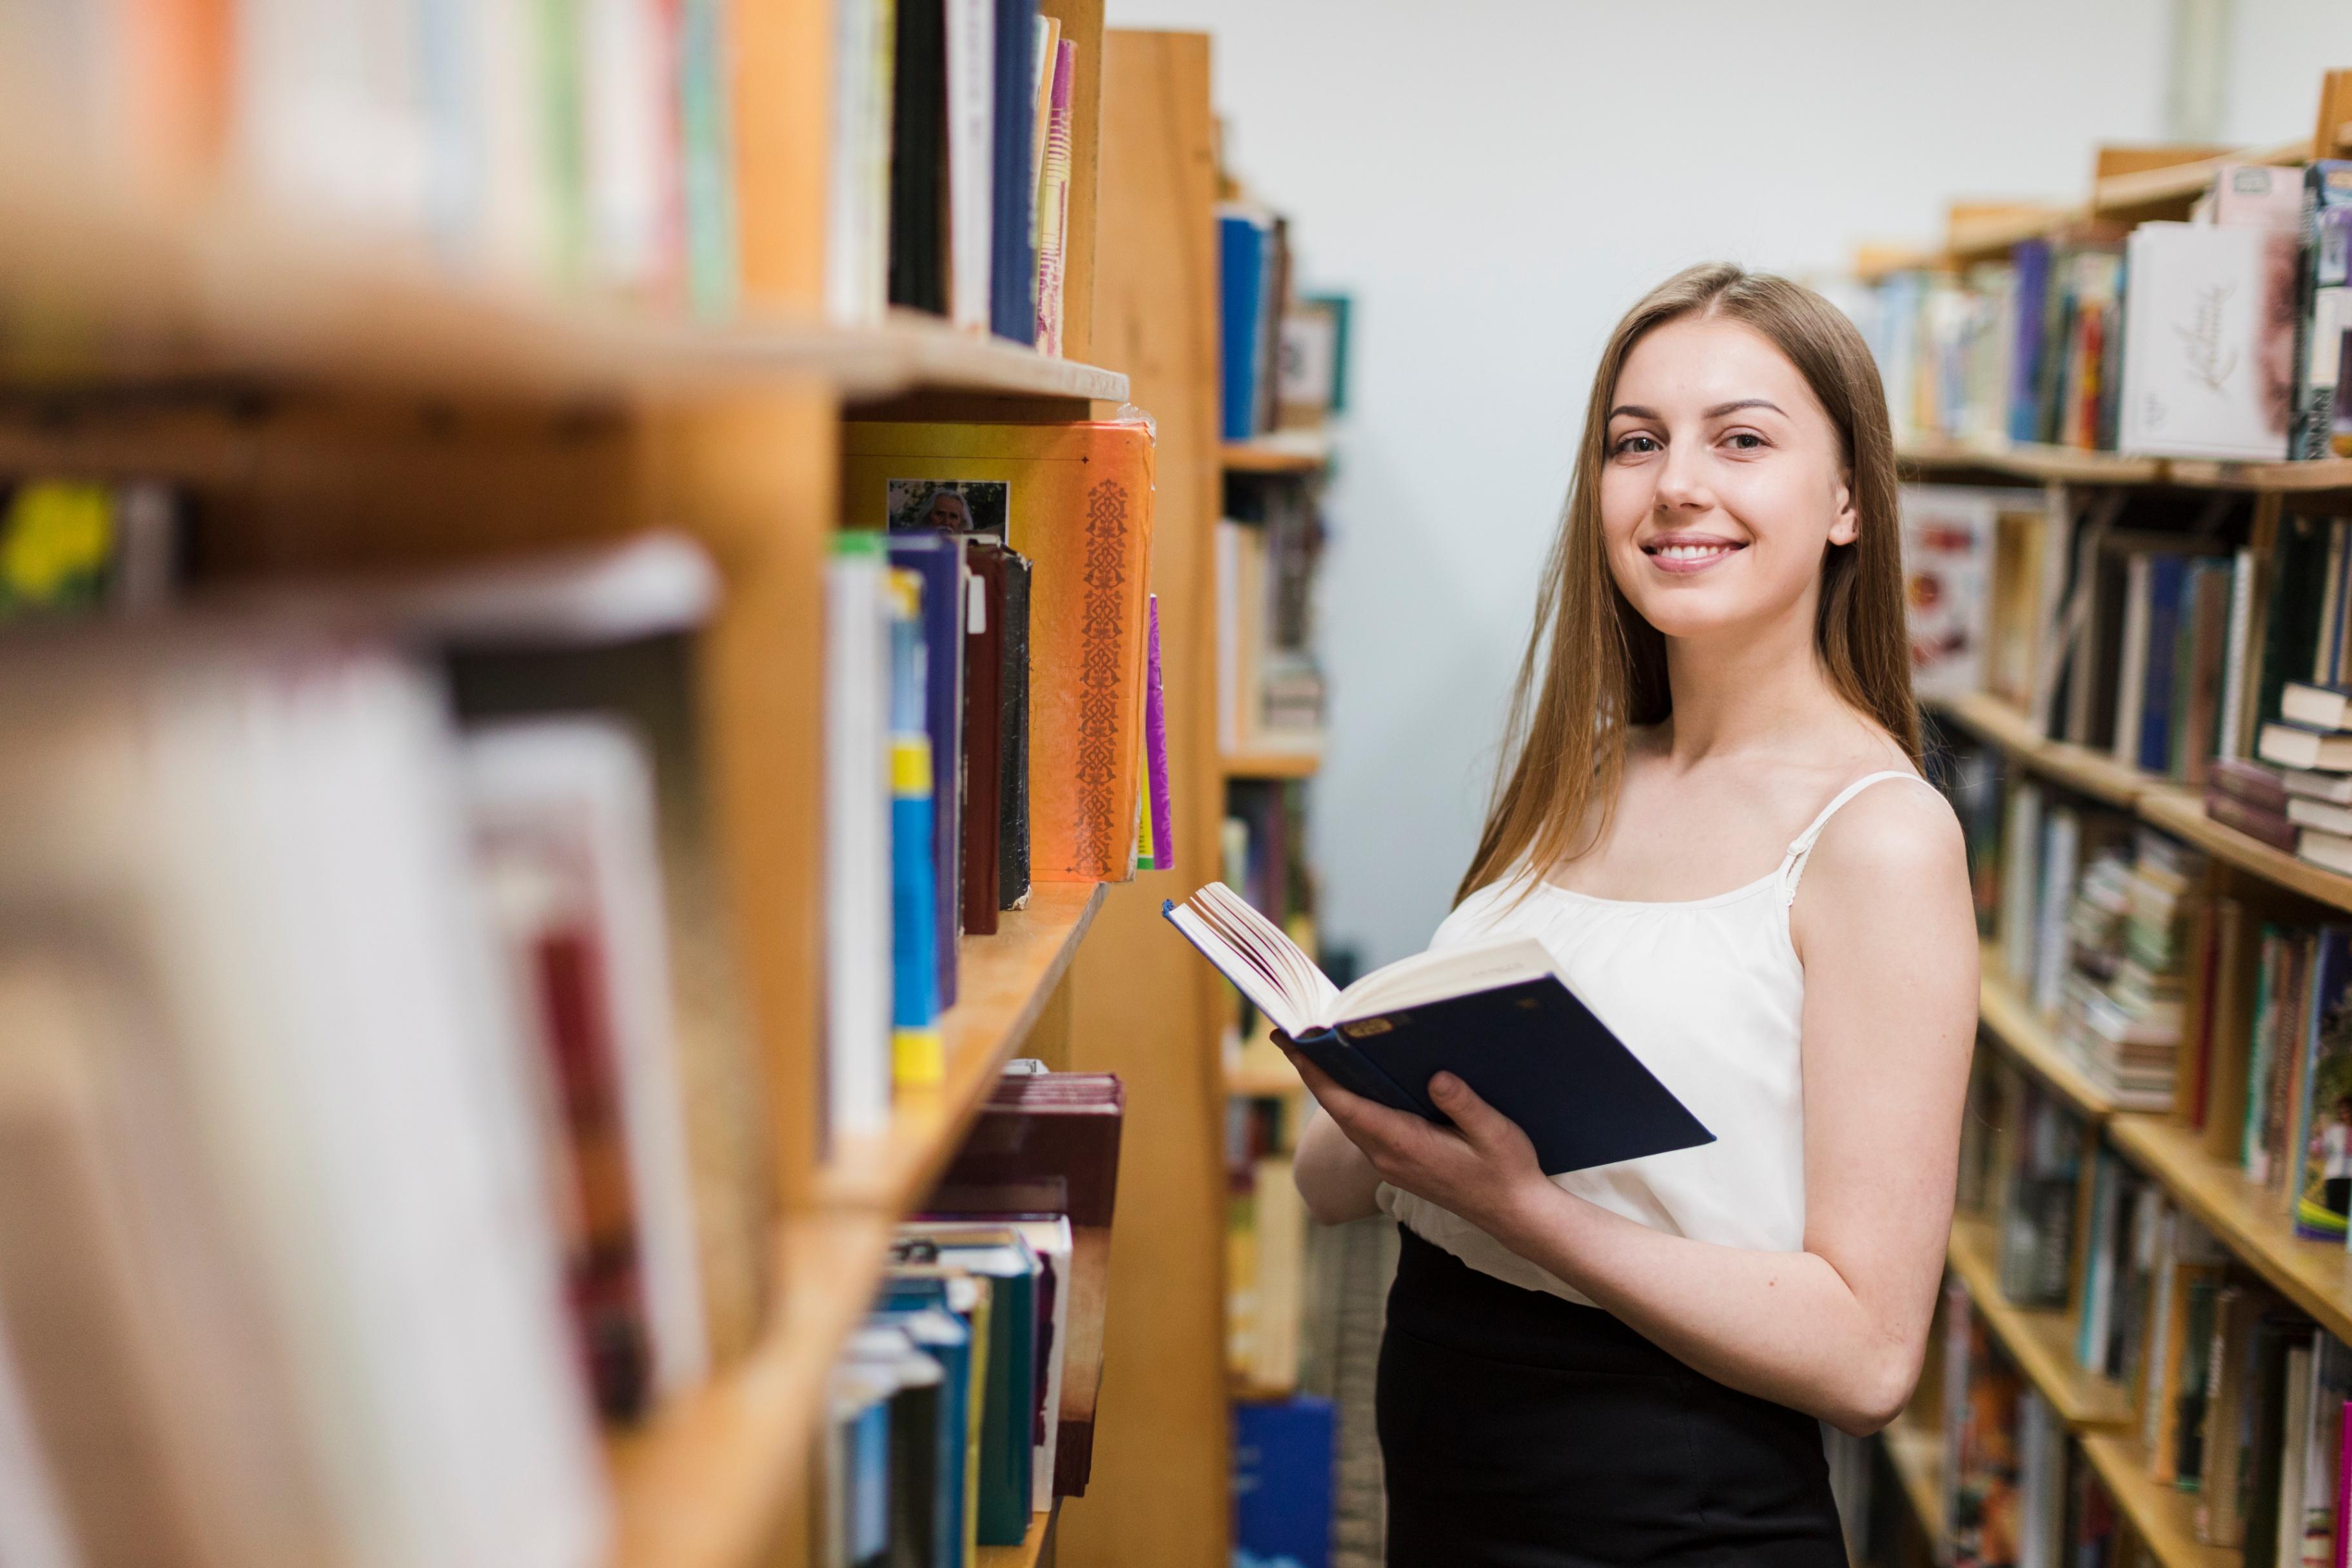 О женщинах в библиотеке. Студентка с книгой. Женщина учится. Девушка с книгой в библиотеке. Фото студентка с книгой в библиотеке.